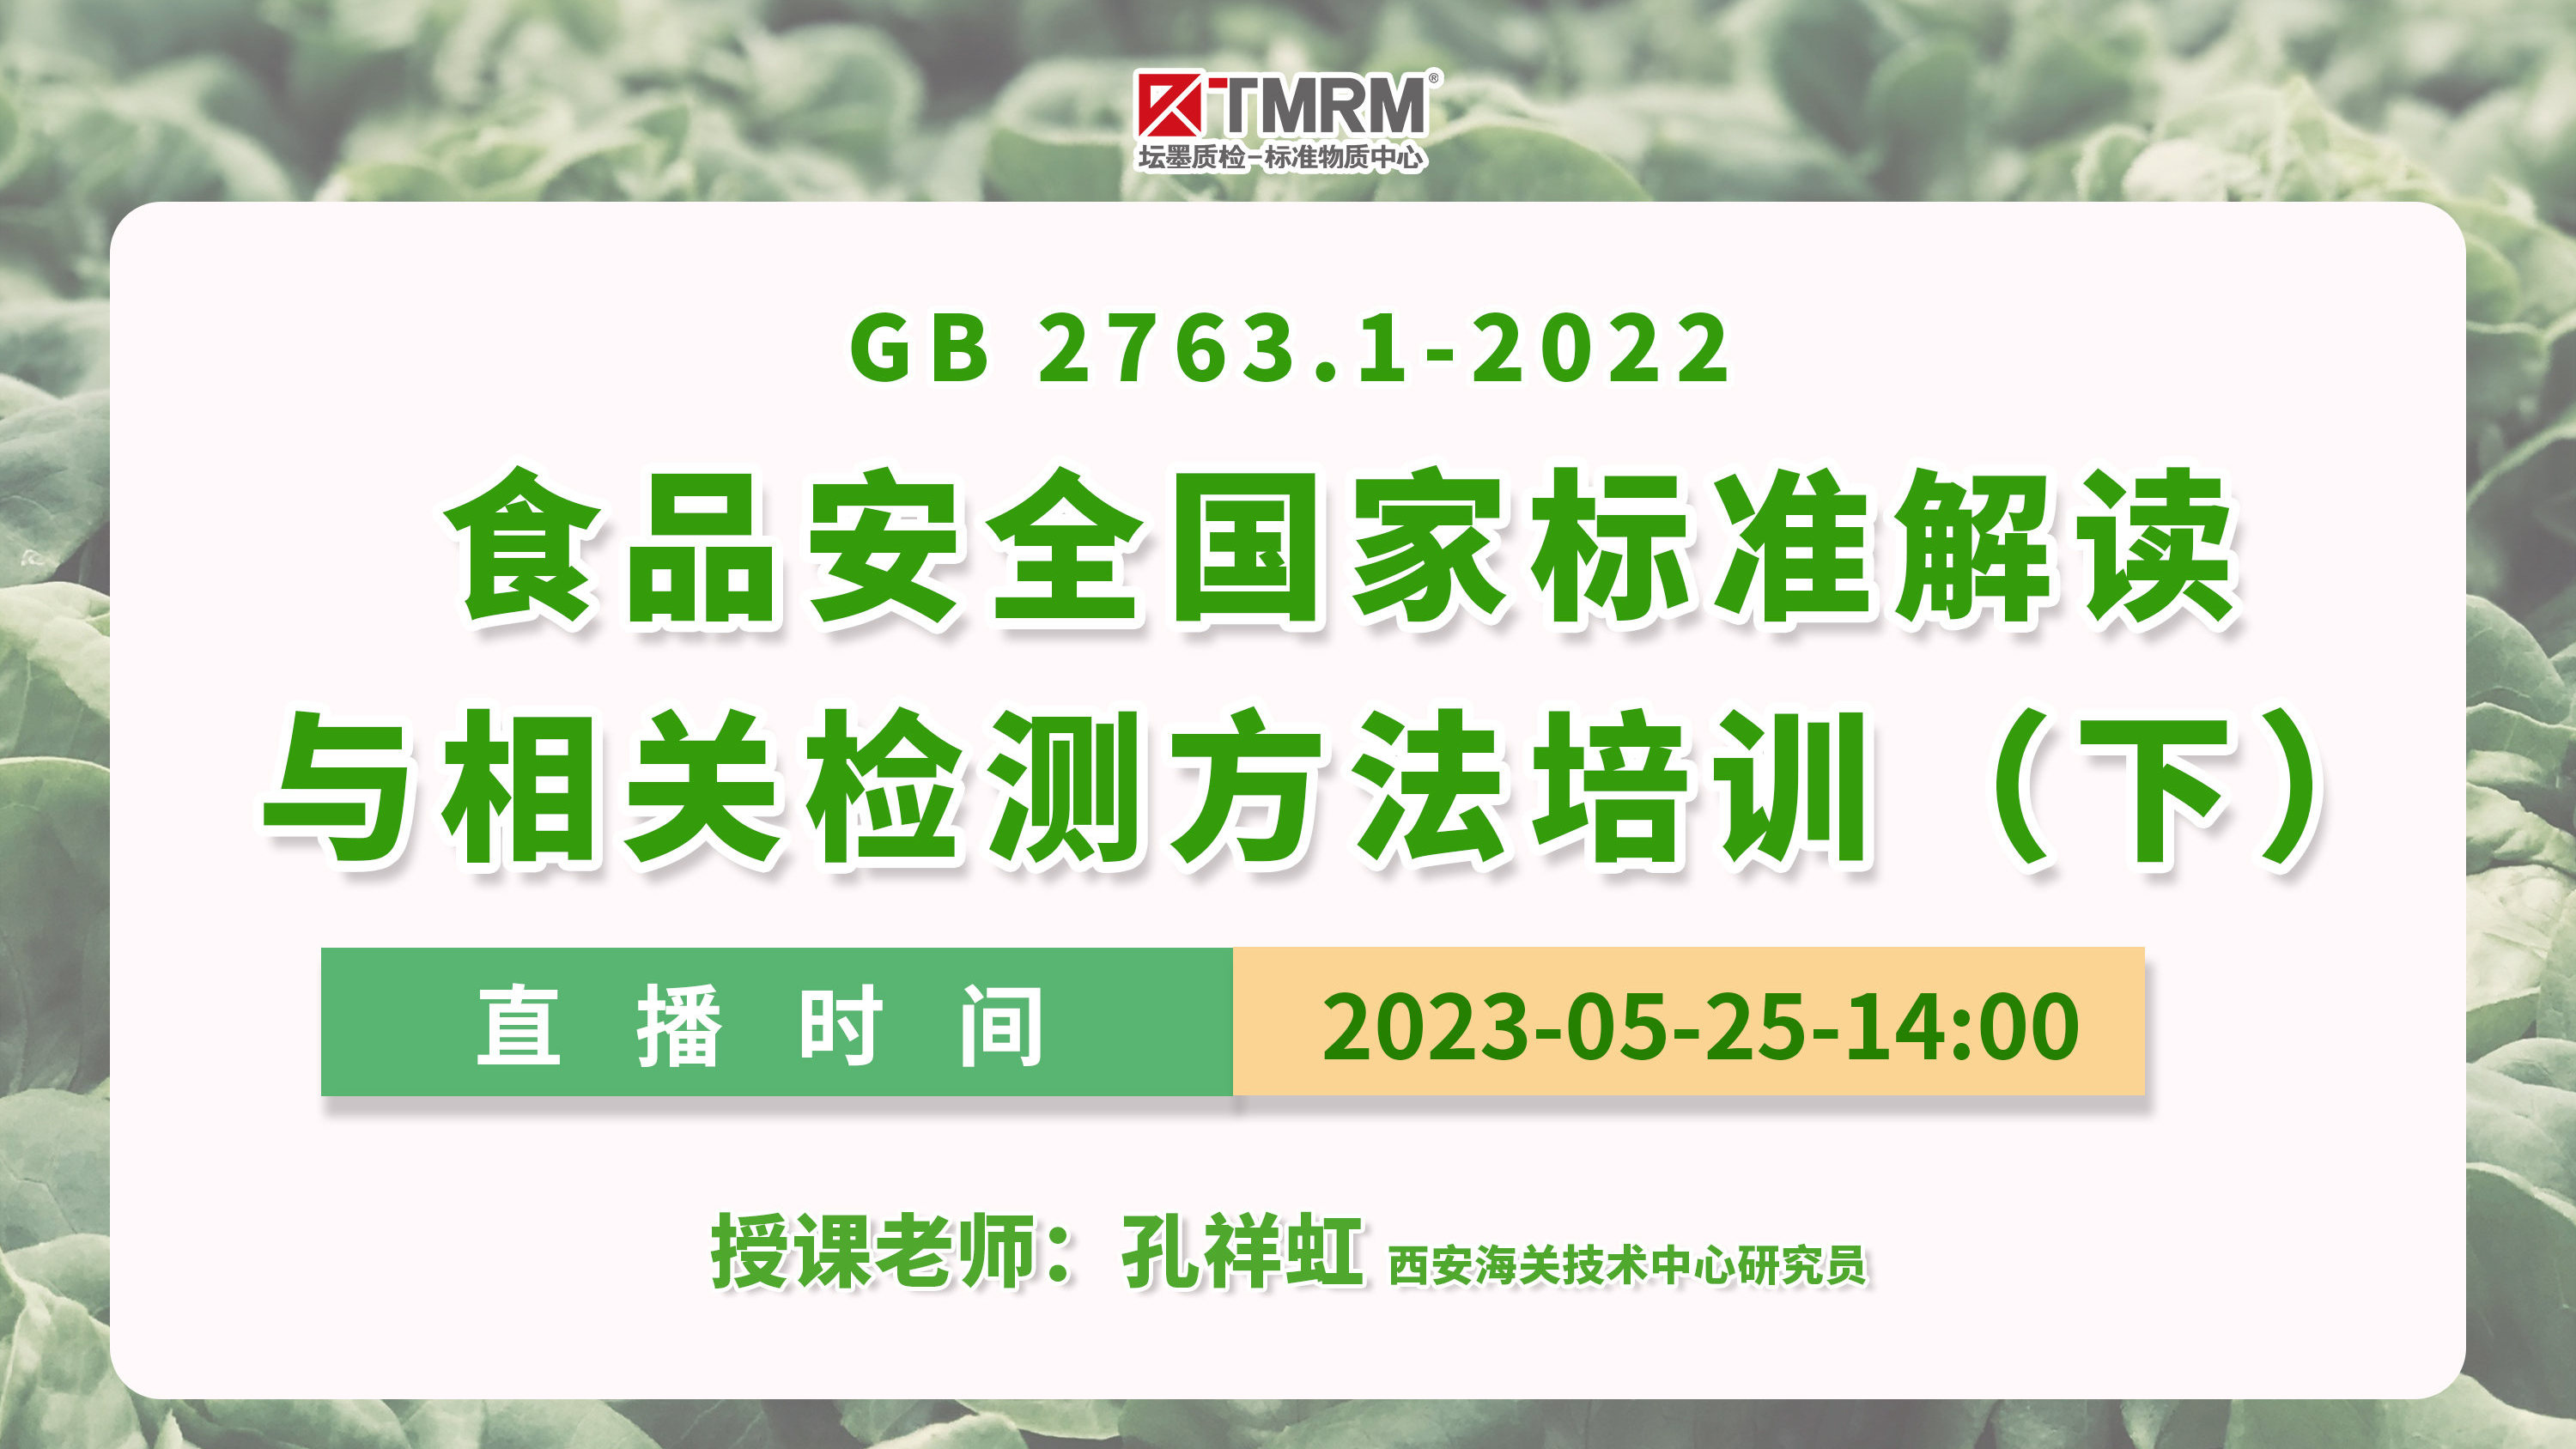 GB 2763.1-2022食品安全国家标准解读与相关检测方法培训（下）